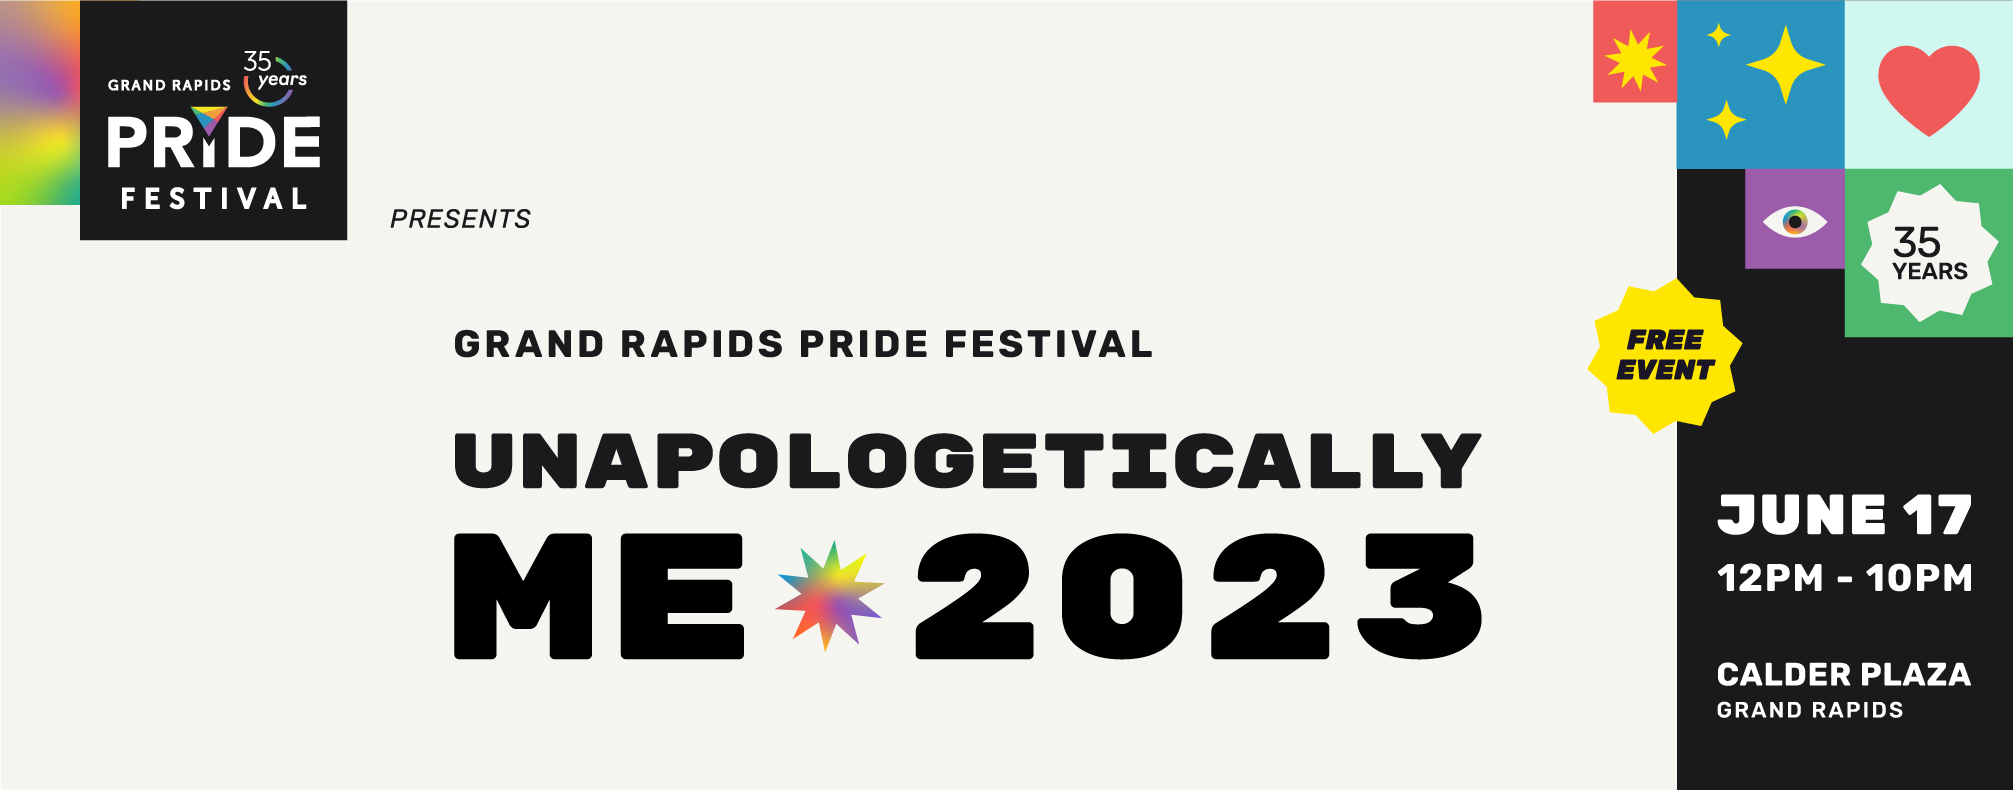 Grand Rapids Pride Festival 2023 cover image